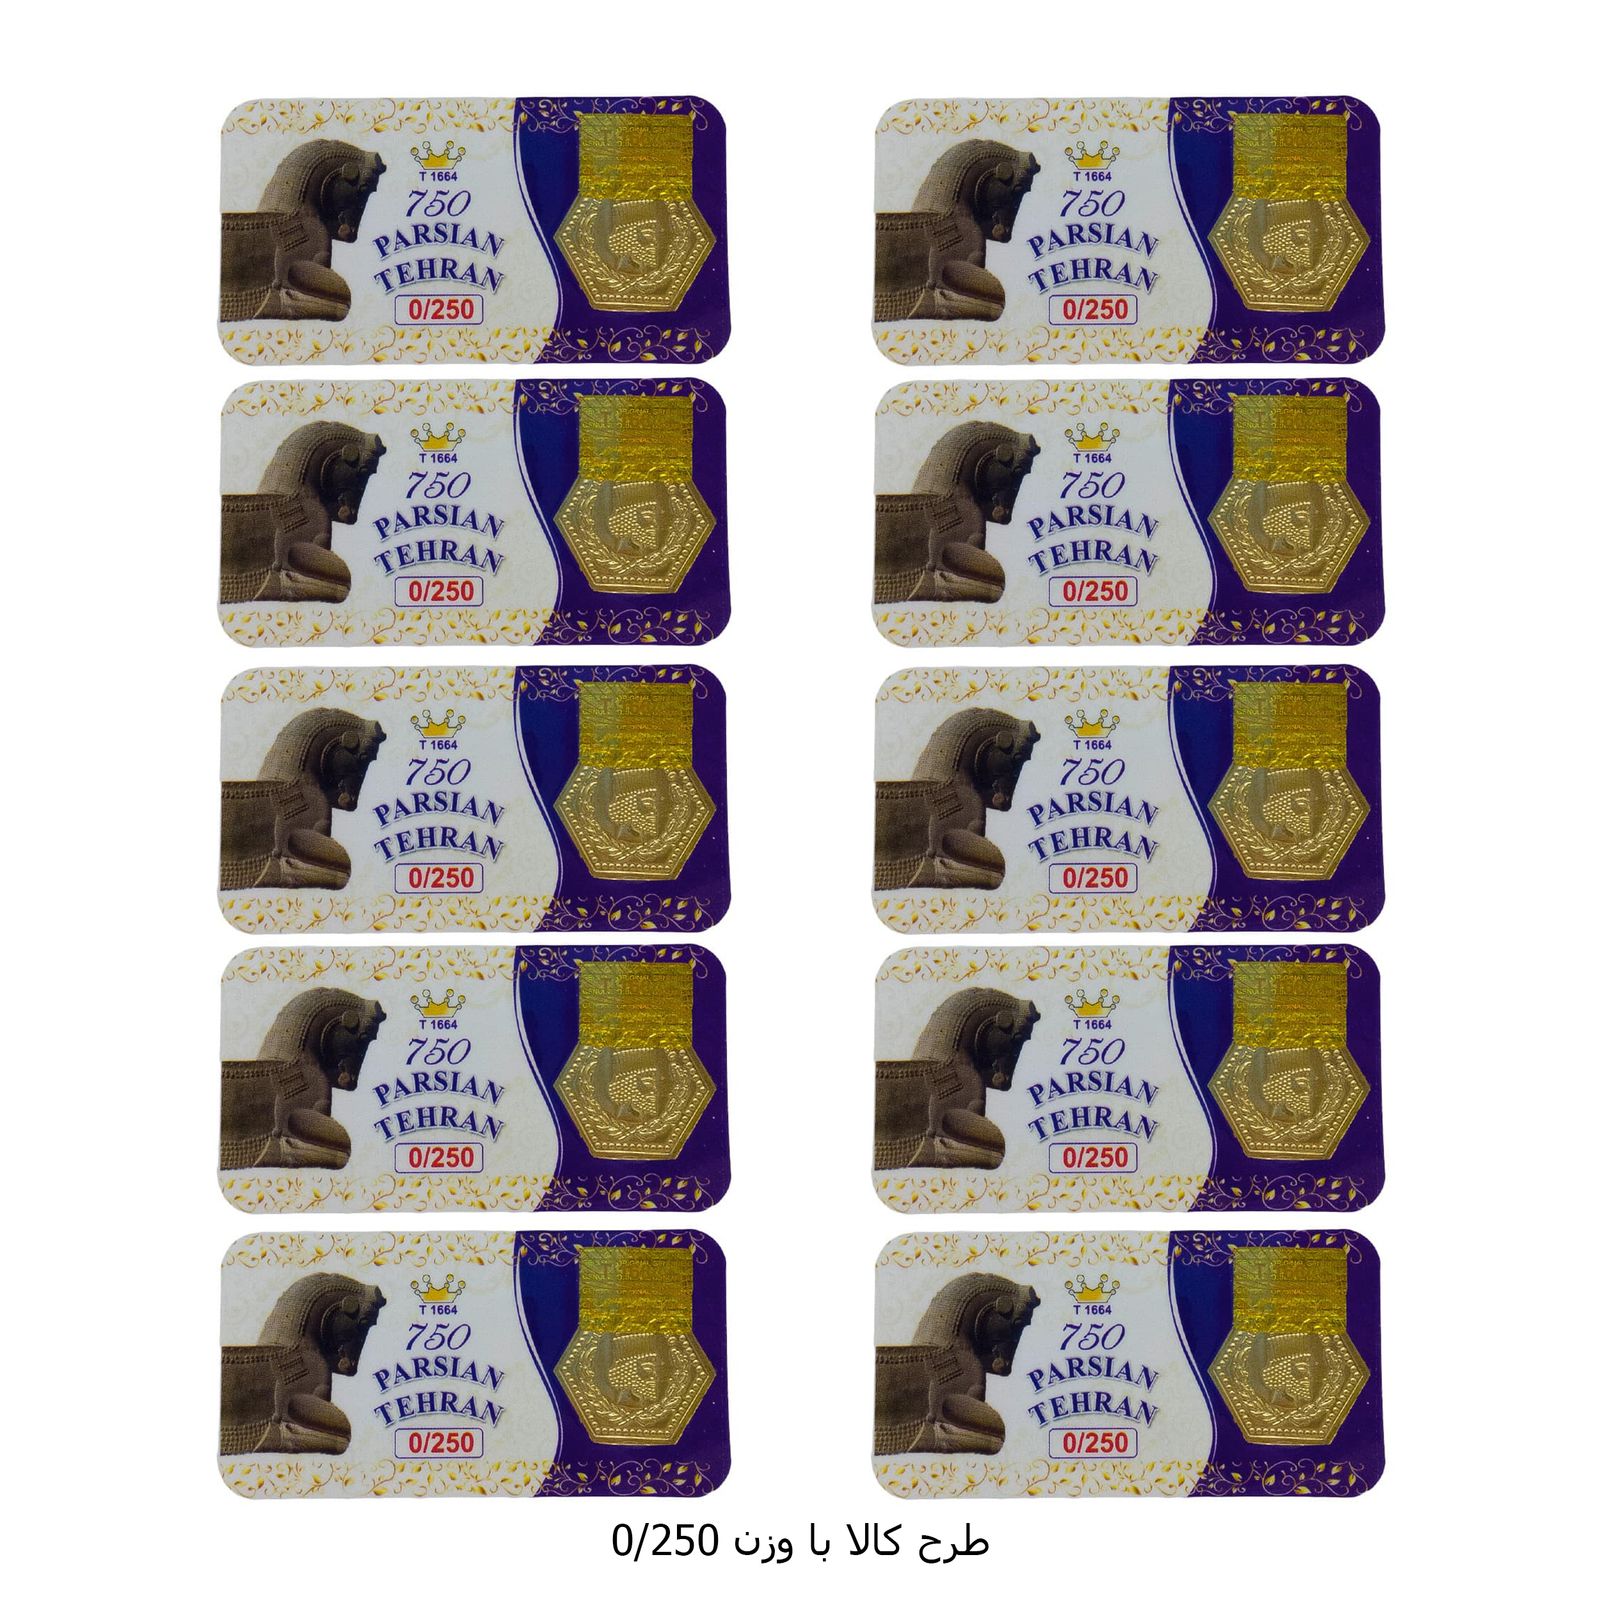 سکه گرمی طلا 18 عیار پارسیان تهران مدل K412 مجموعه 10 عددی -  - 8